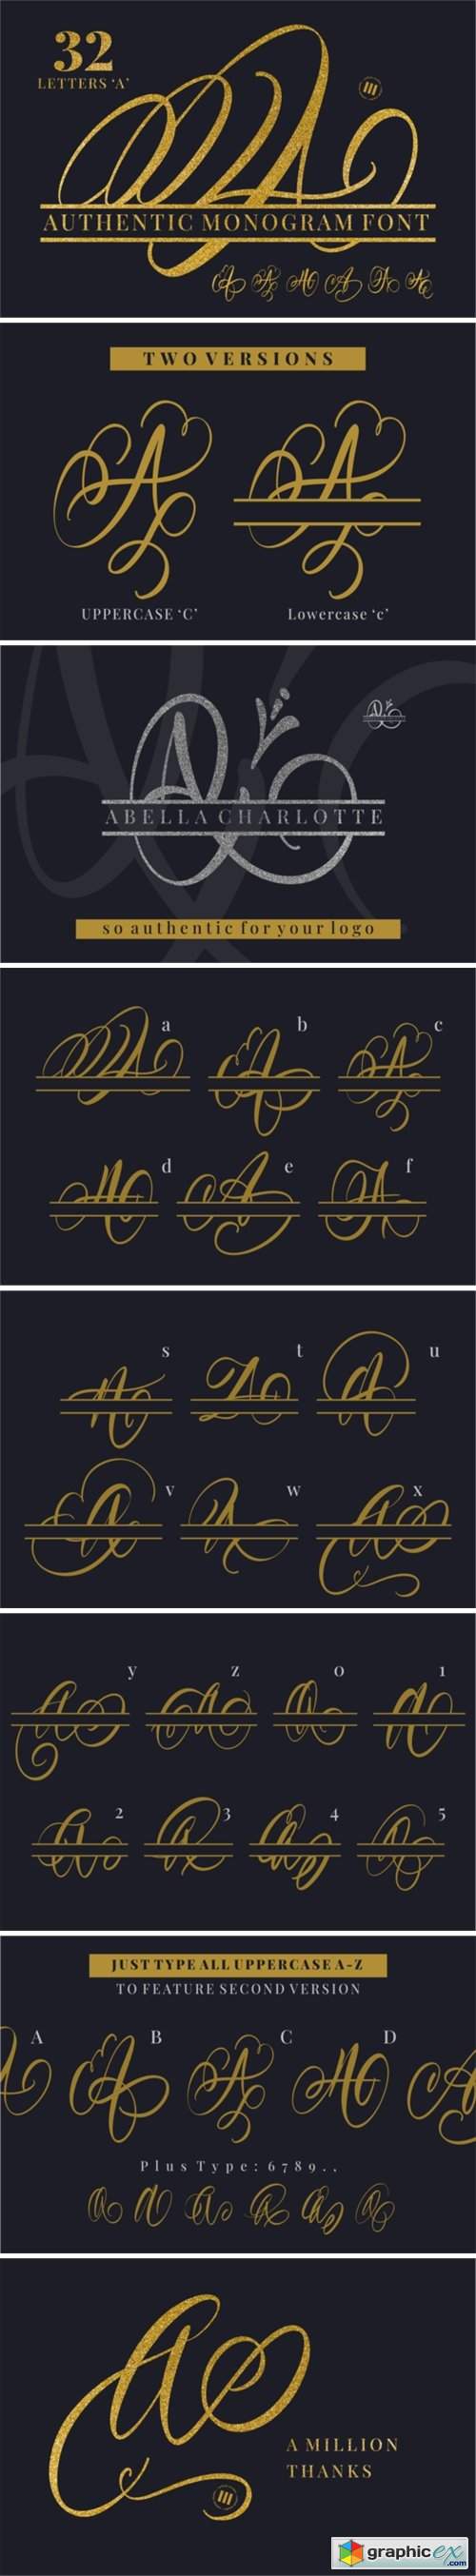  Authentic Monogram Font 